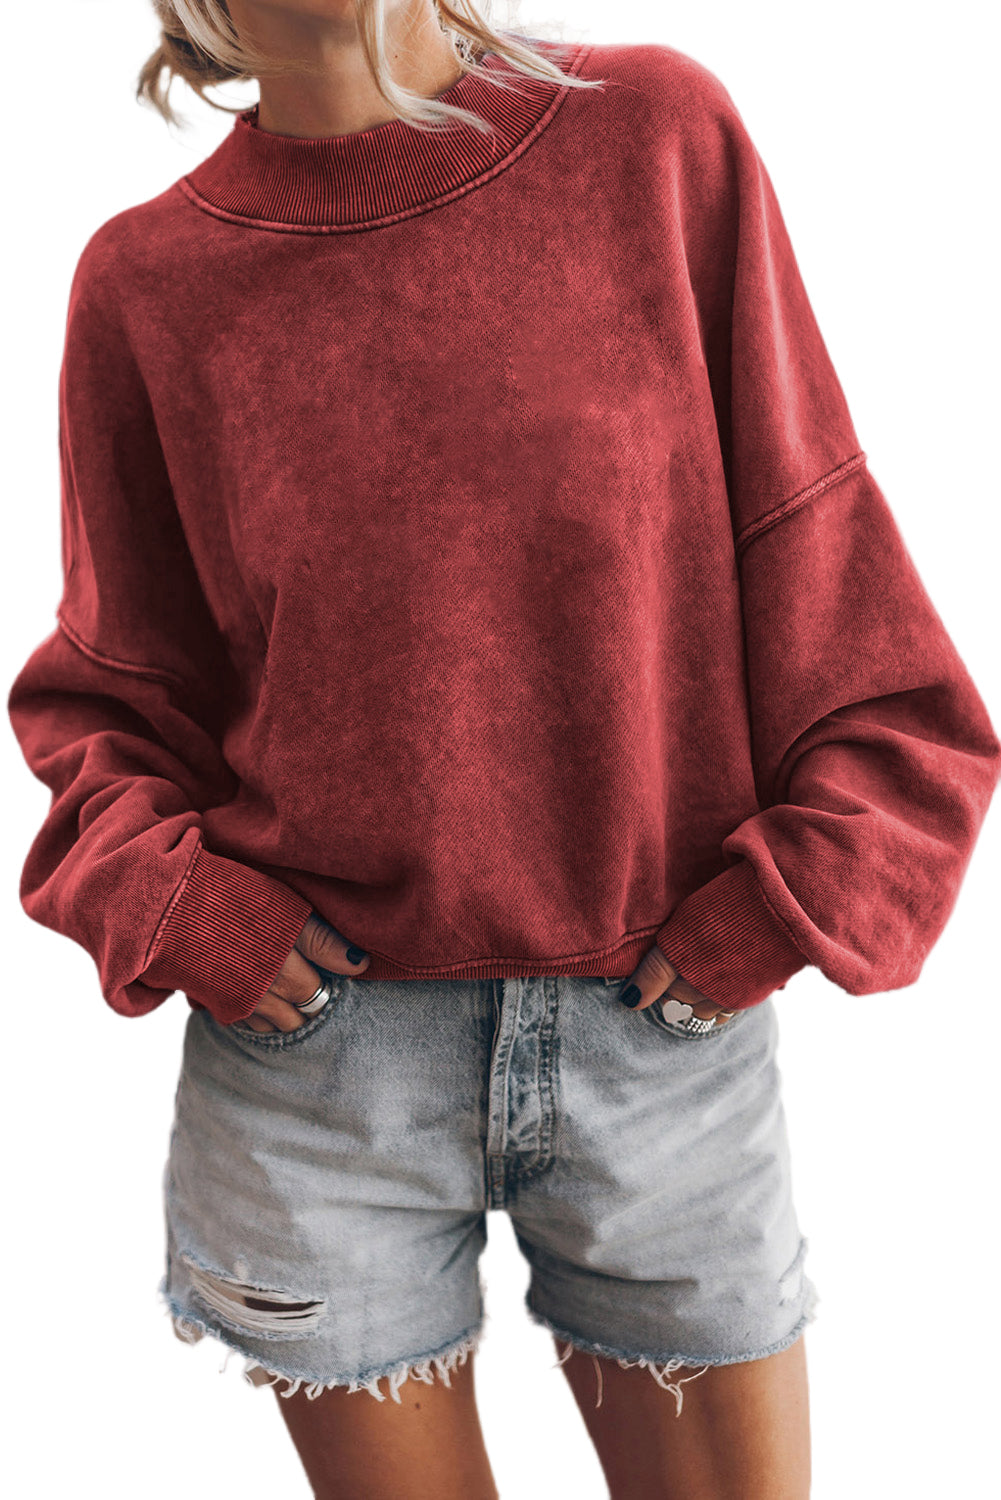 Pulover Pulover z okroglim izrezom in spuščenimi rameni rdeče barve Dahlia